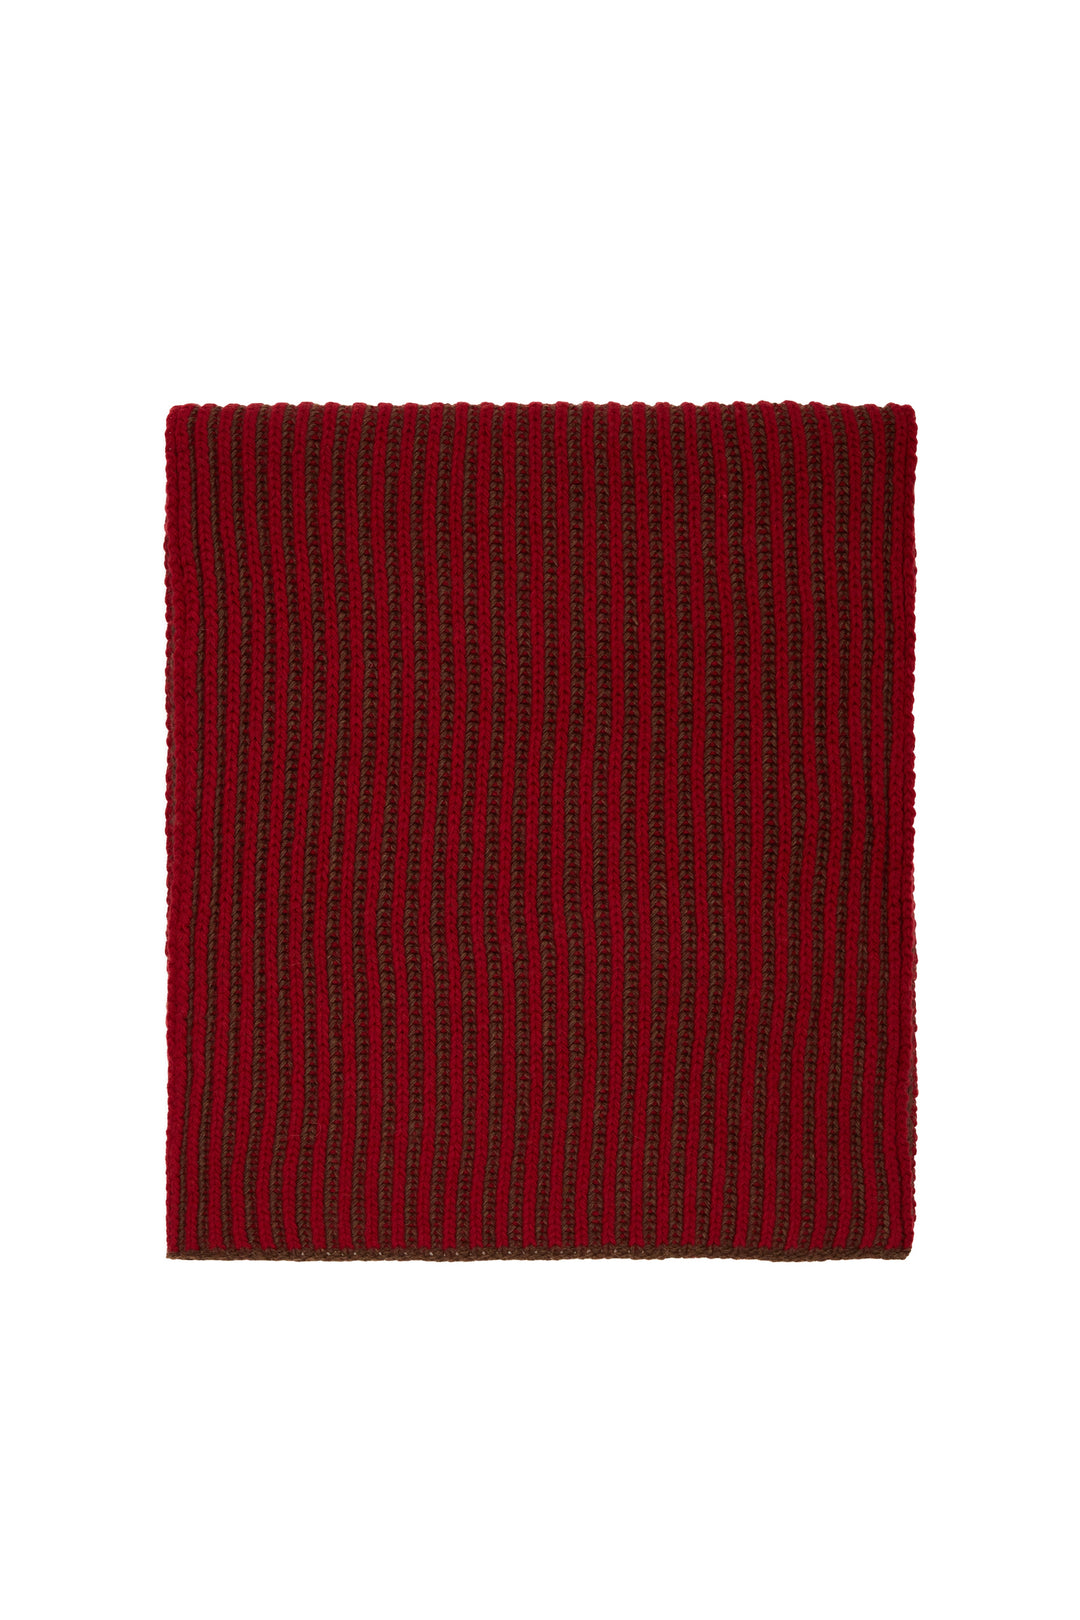 GALLO Sciarpa unisex lana e cashmere rossa costa inglese vanisé a due colori - Mancinelli 1954